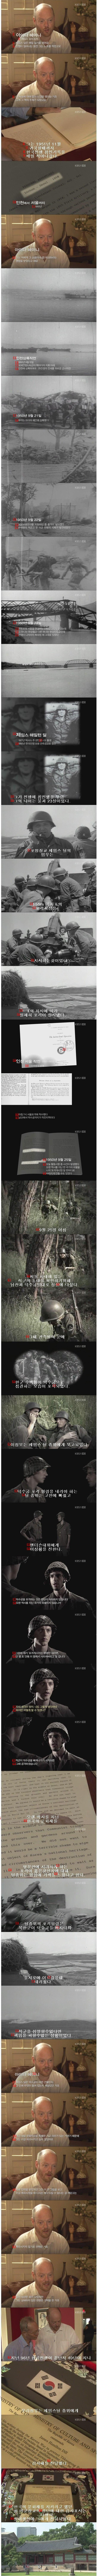 韓国の歴史を変えた米軍将校の決定jpg